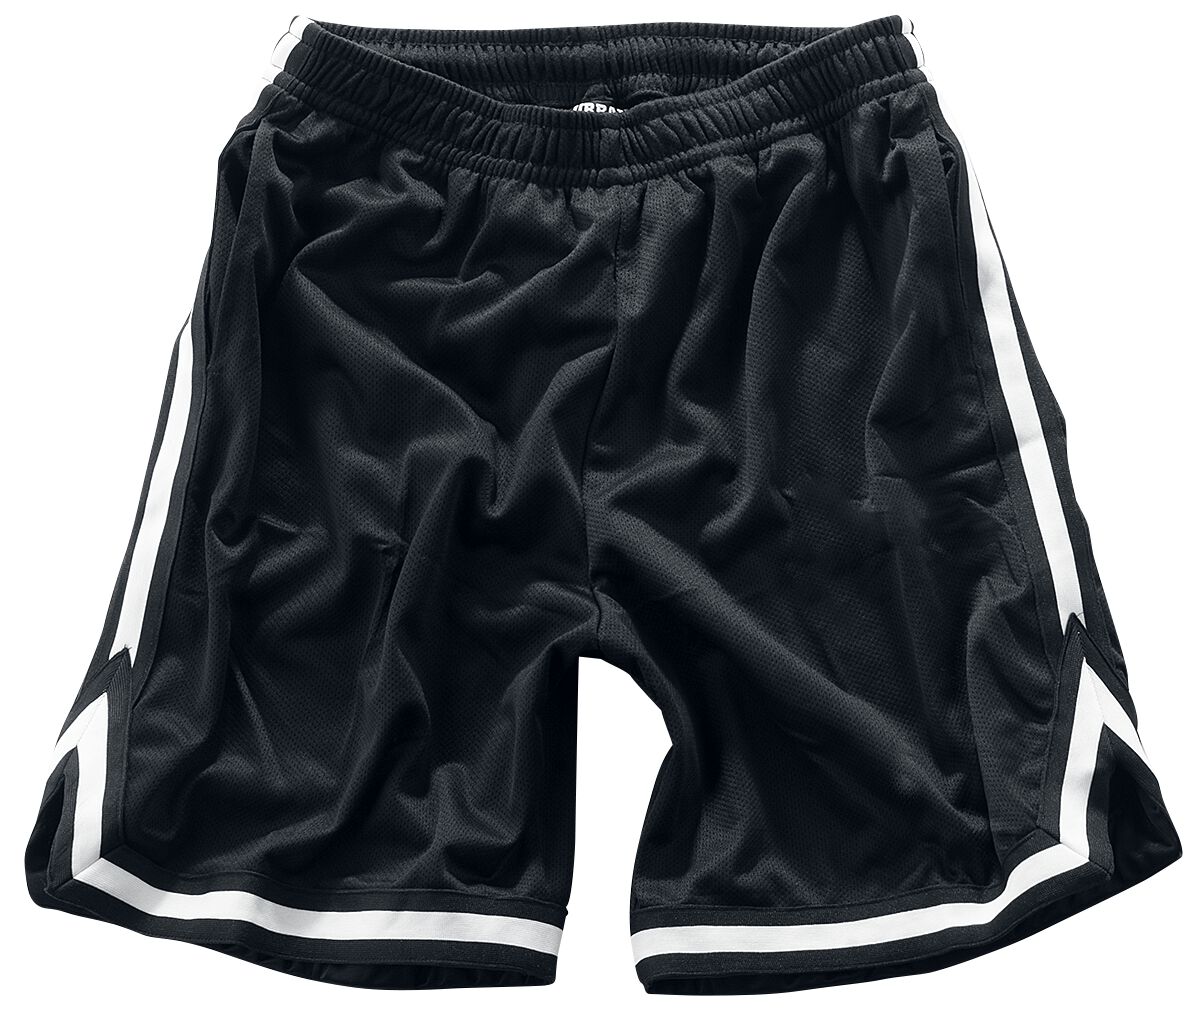 Urban Classics Short - Stripes Mesh Shorts - S bis 3XL - für Männer - Größe XL - schwarz/weiß von Urban Classics